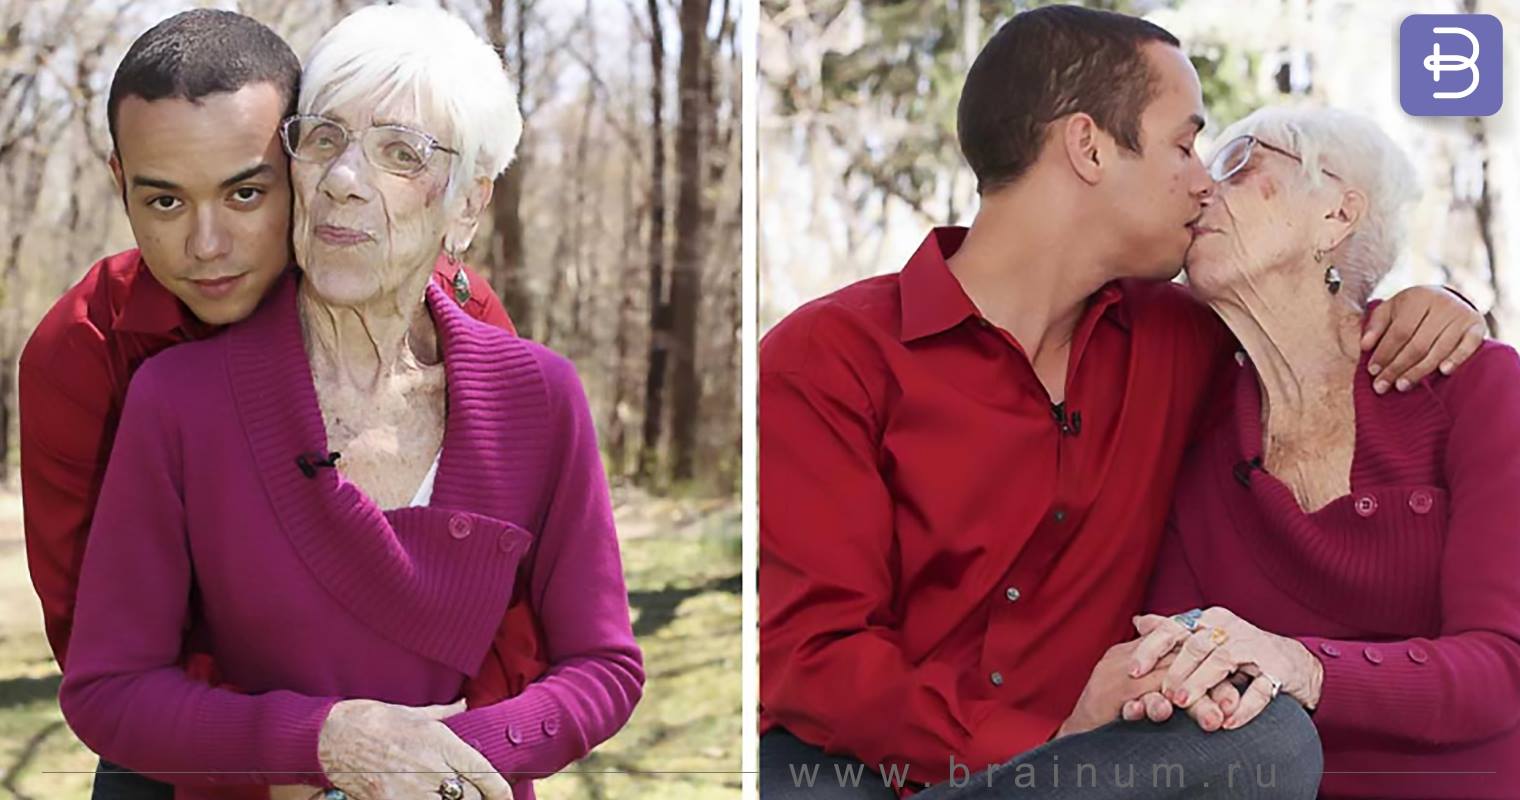 Пожилая женщина любит молодую. Кайл Джонс и 91-летняя Марджори маккул. 31-Летний Кайл Джонс и 91-летняя Марджори маккул. Кайл Джонс (31 год) встречается с Марджори маккул — 91-летней бабушкой.. Старые и молодые люди.